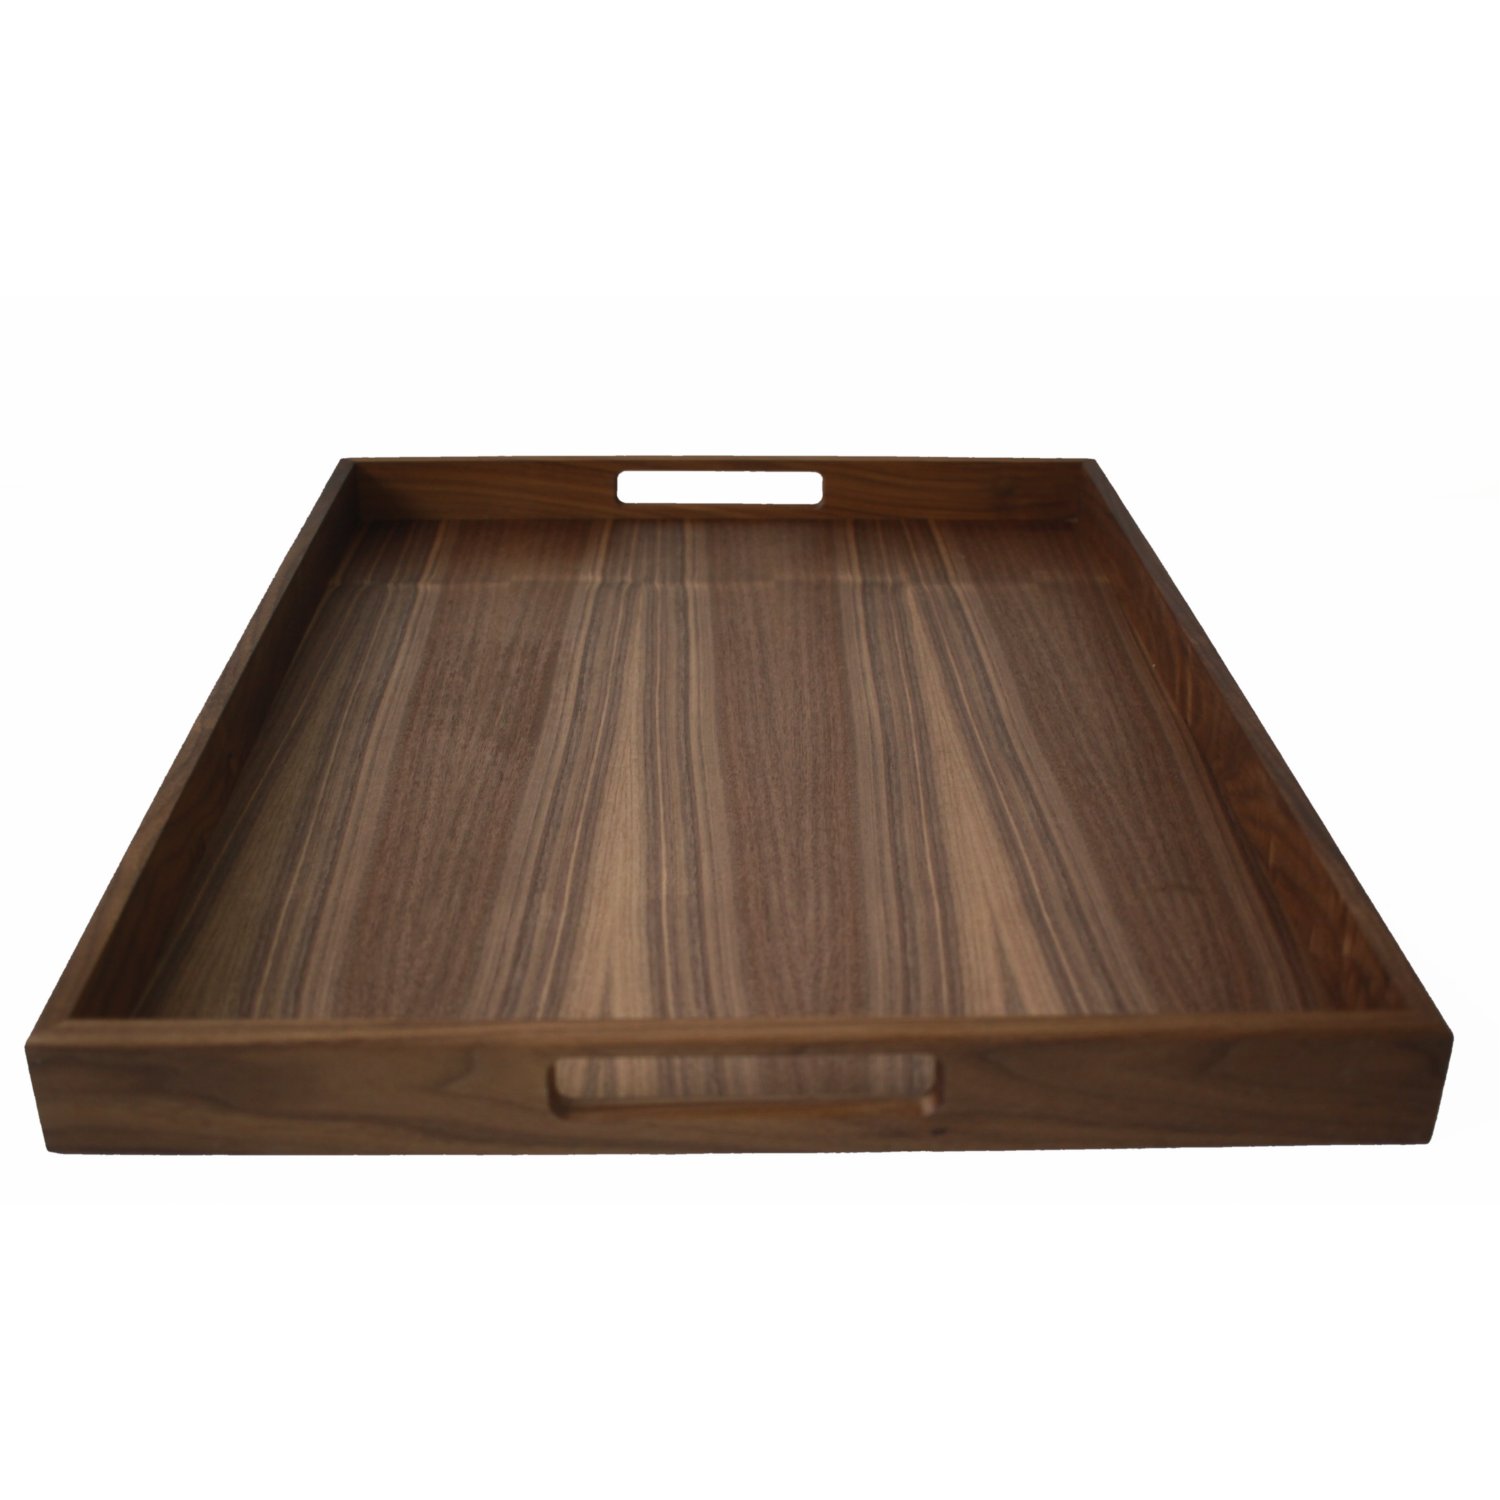 Walnut wood tray 60x45cm